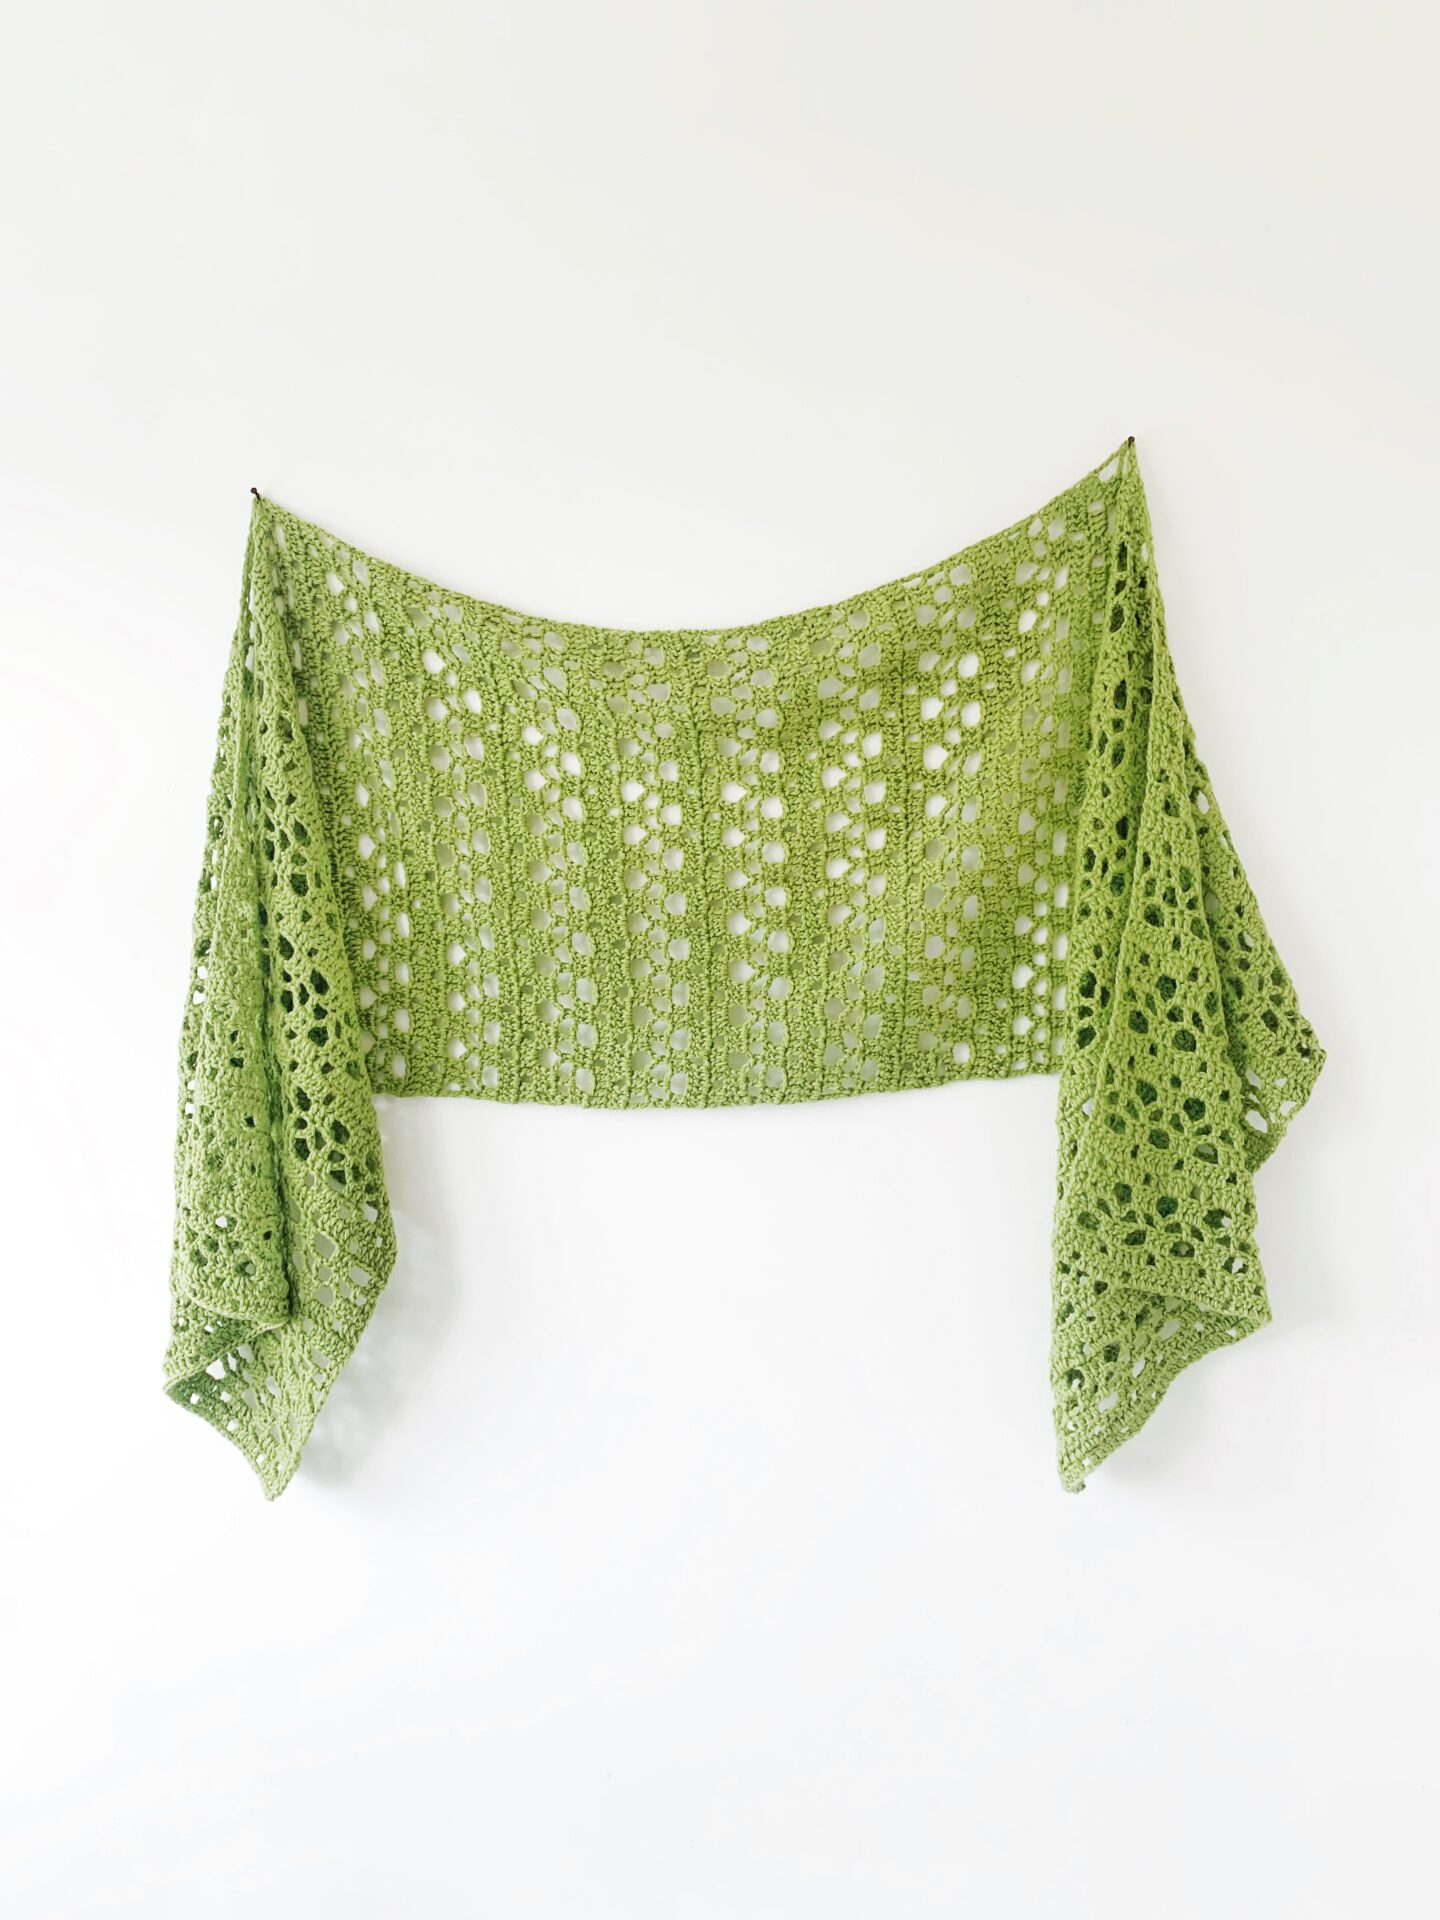 Flores Sideways Shawl - Free Crochet Pattern